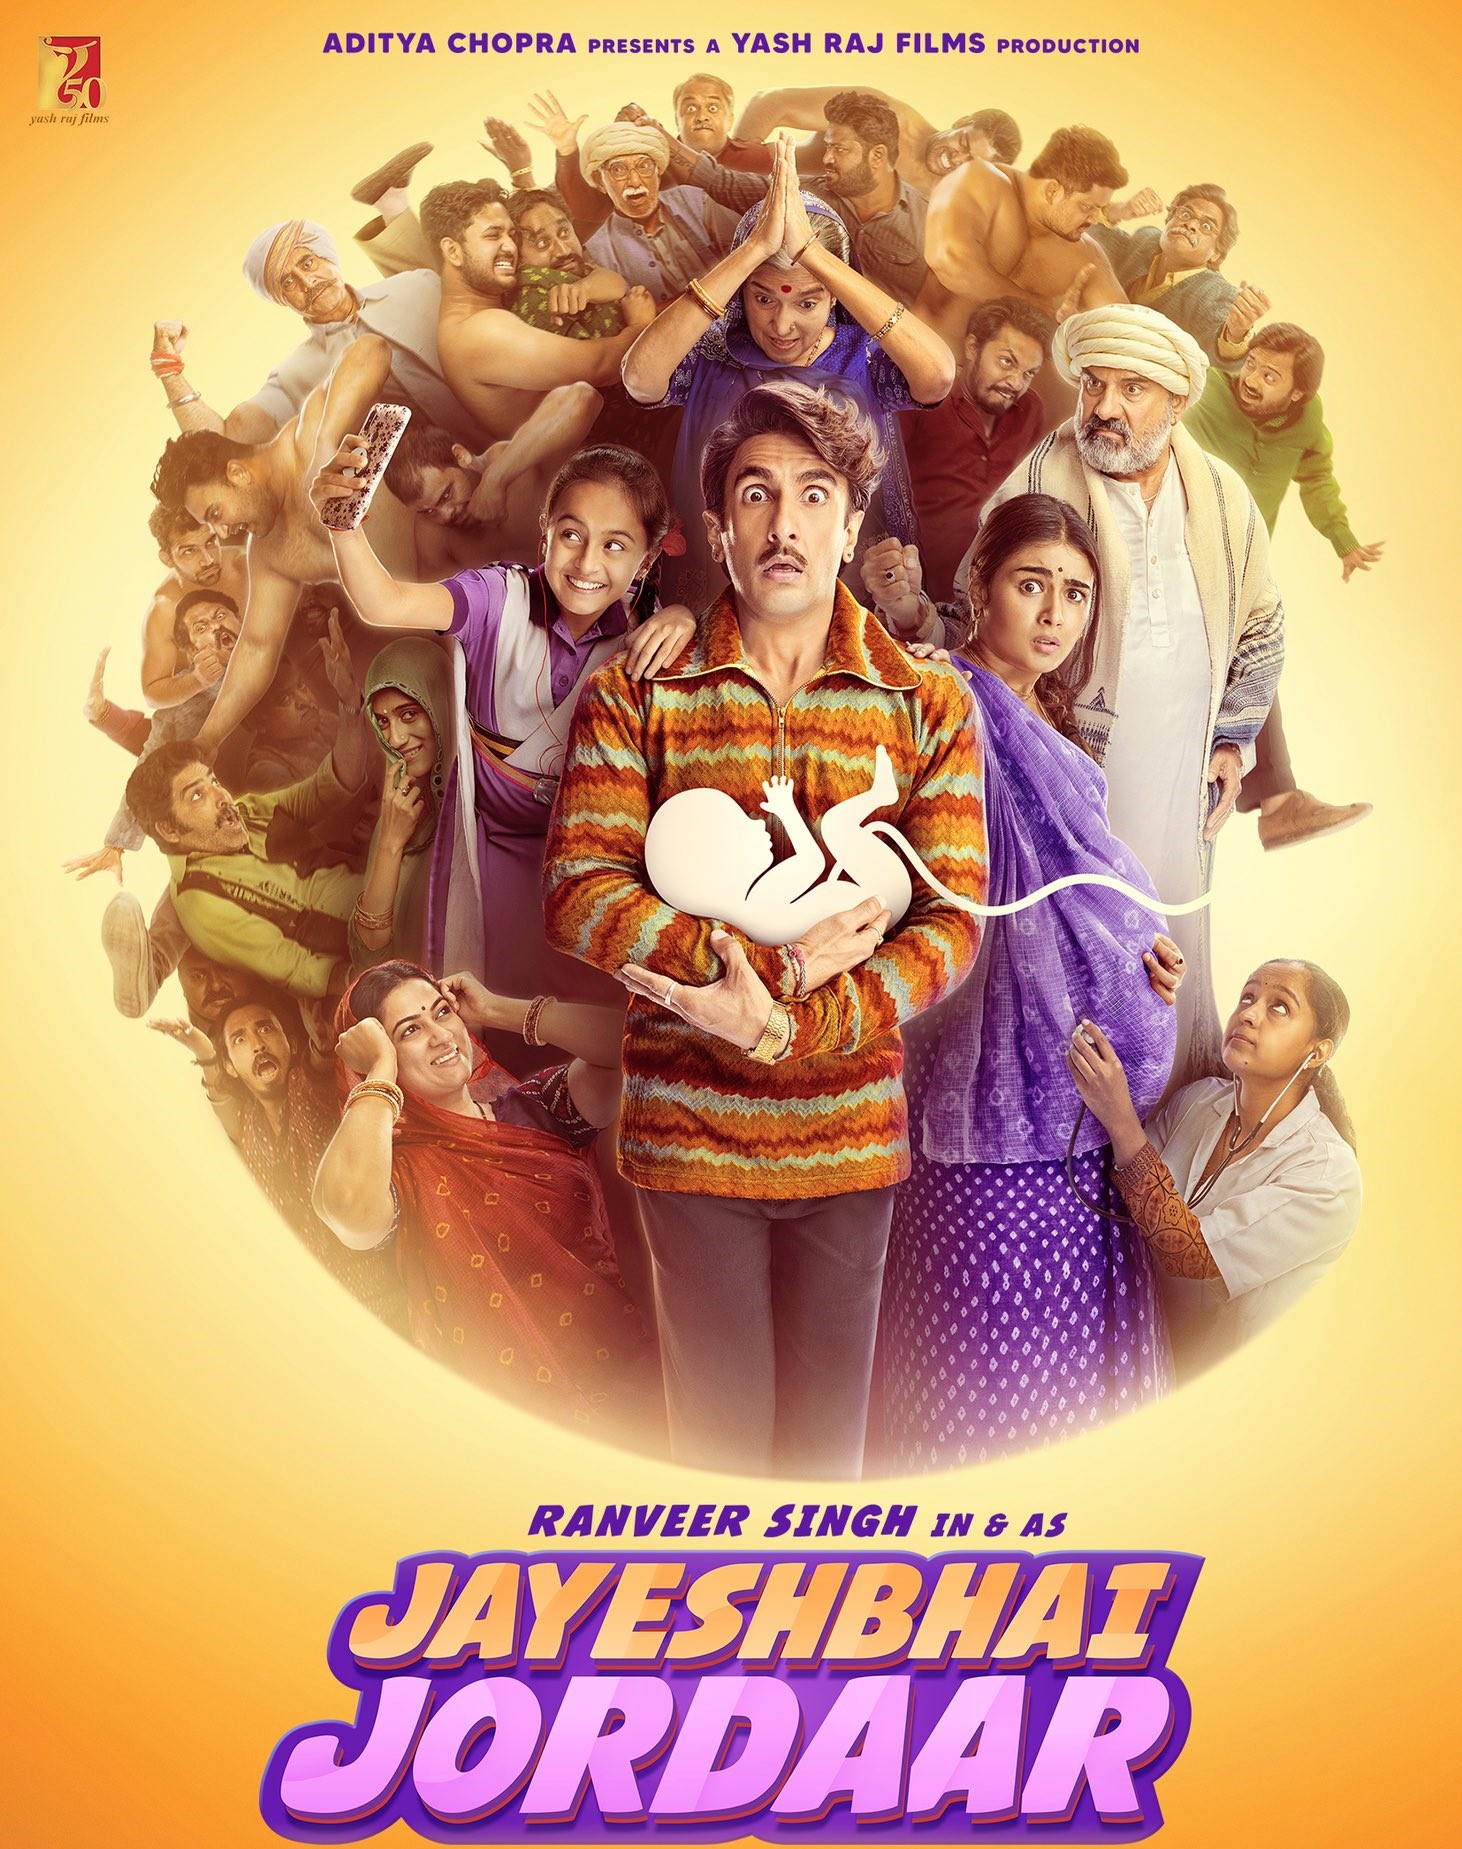 Jayeshbhai Jordaar Trailer Out : रणवीर सिंह की अपकमिंग फिल्म जयेशभाई जोरदार का ट्रेलर जारी, जानें कब होगी फिल्म रिलीज